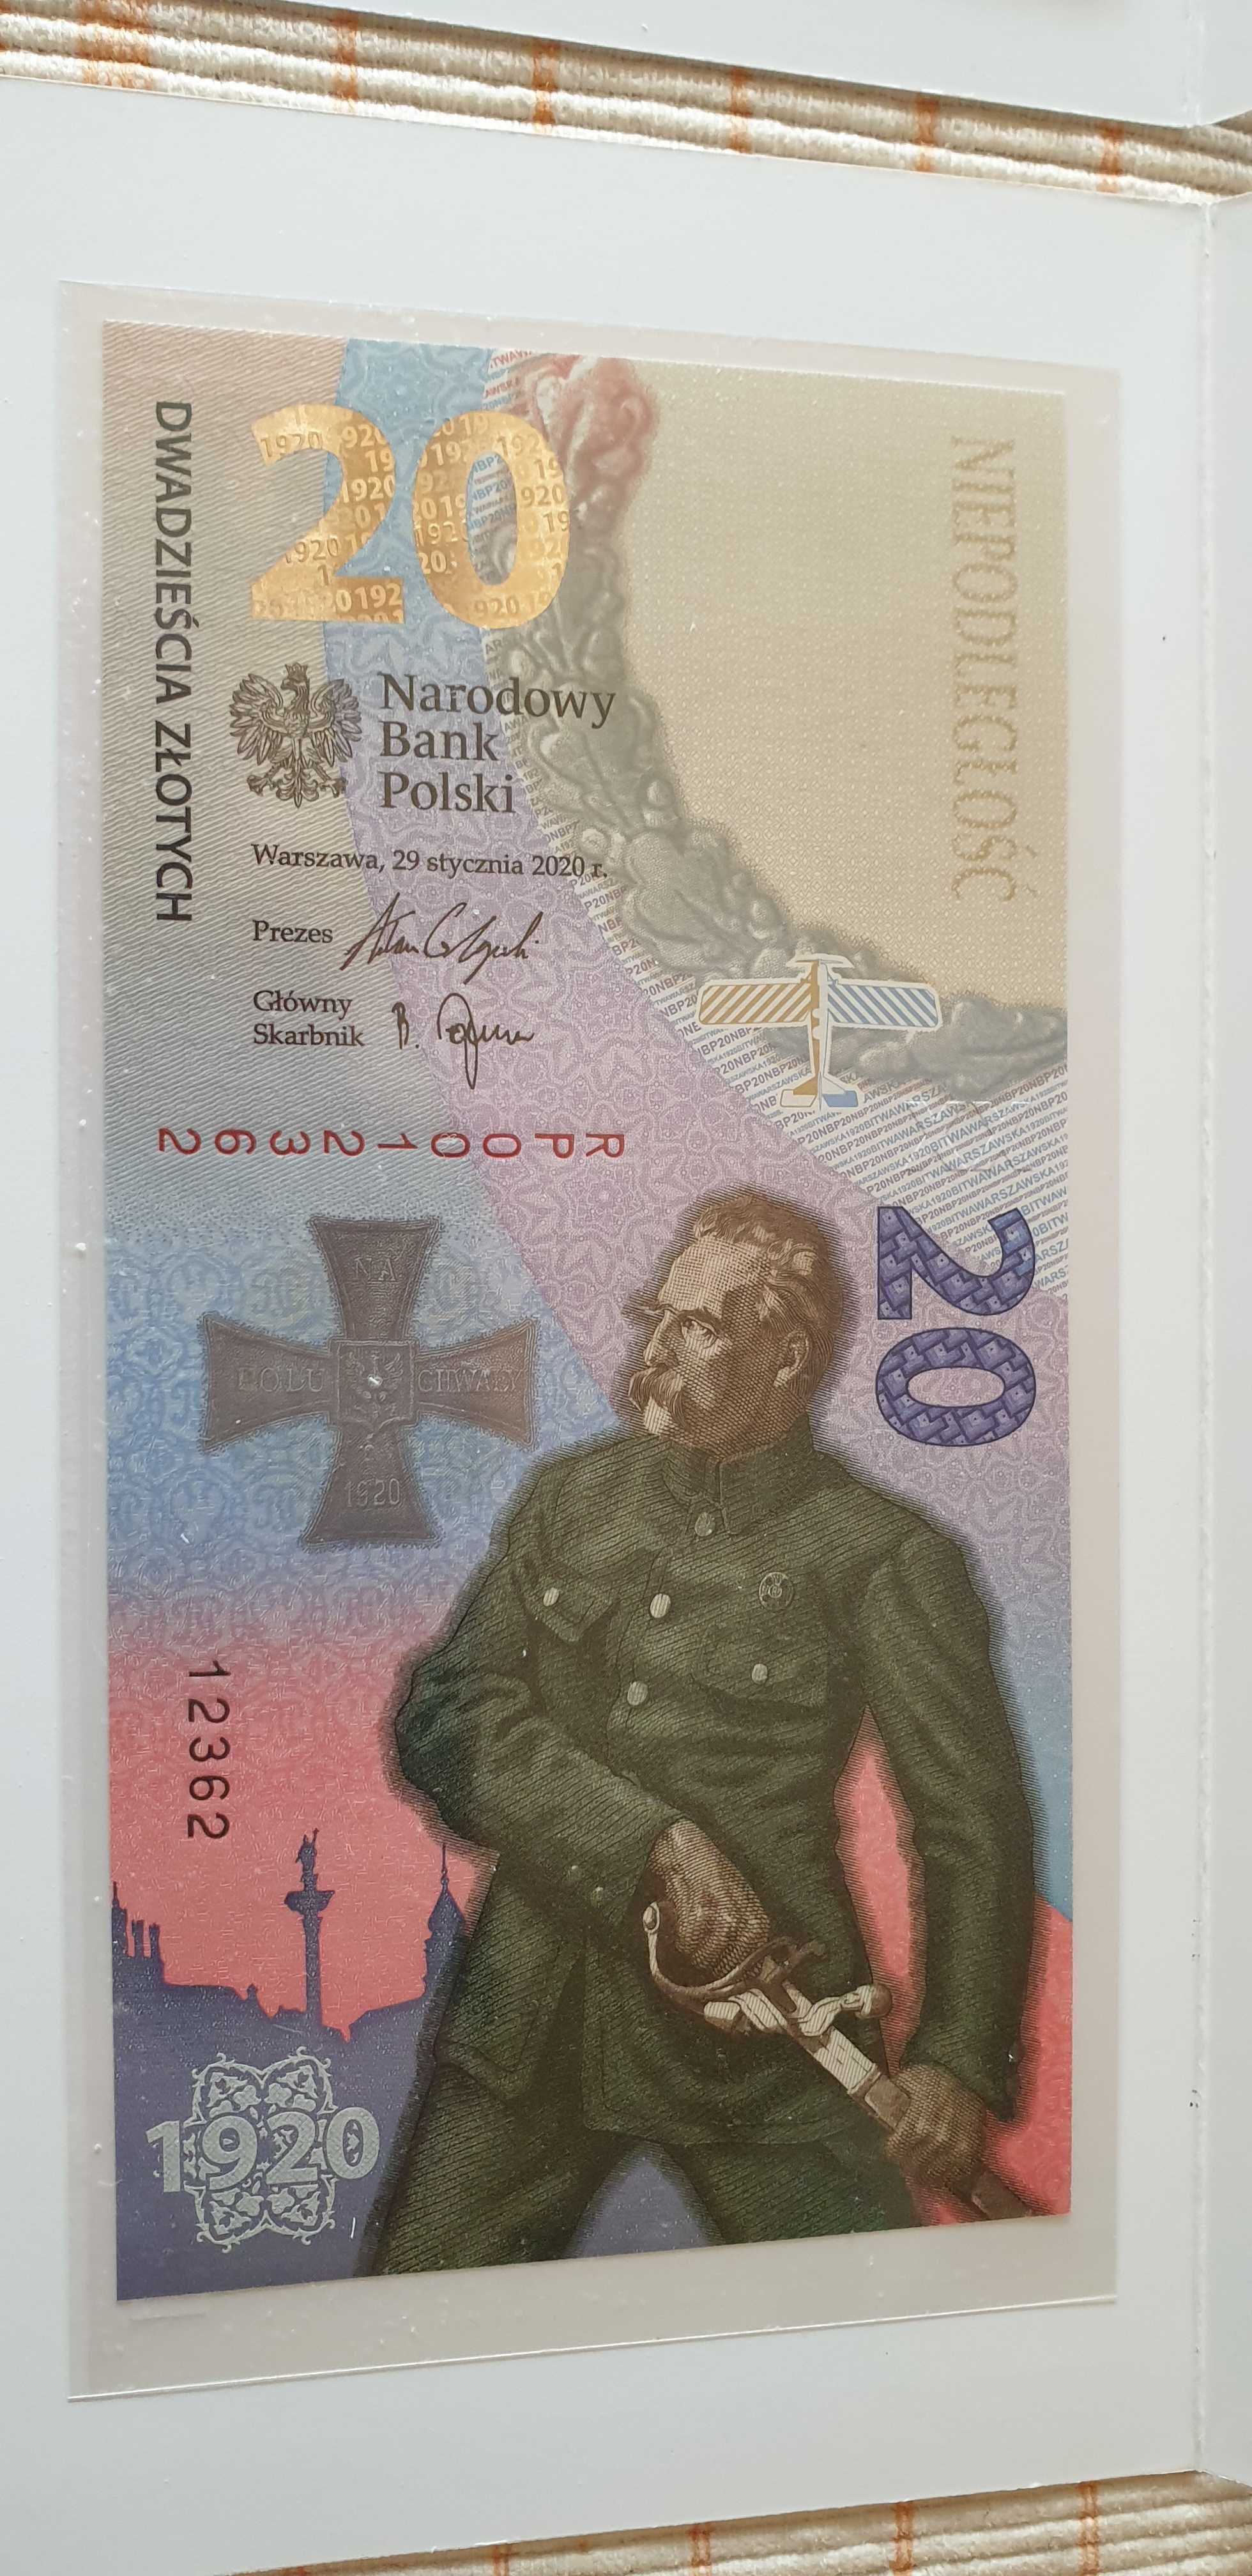 3szt banknotów  UNC w folii bankowej.Kaczynski,bitwa i ochrona.